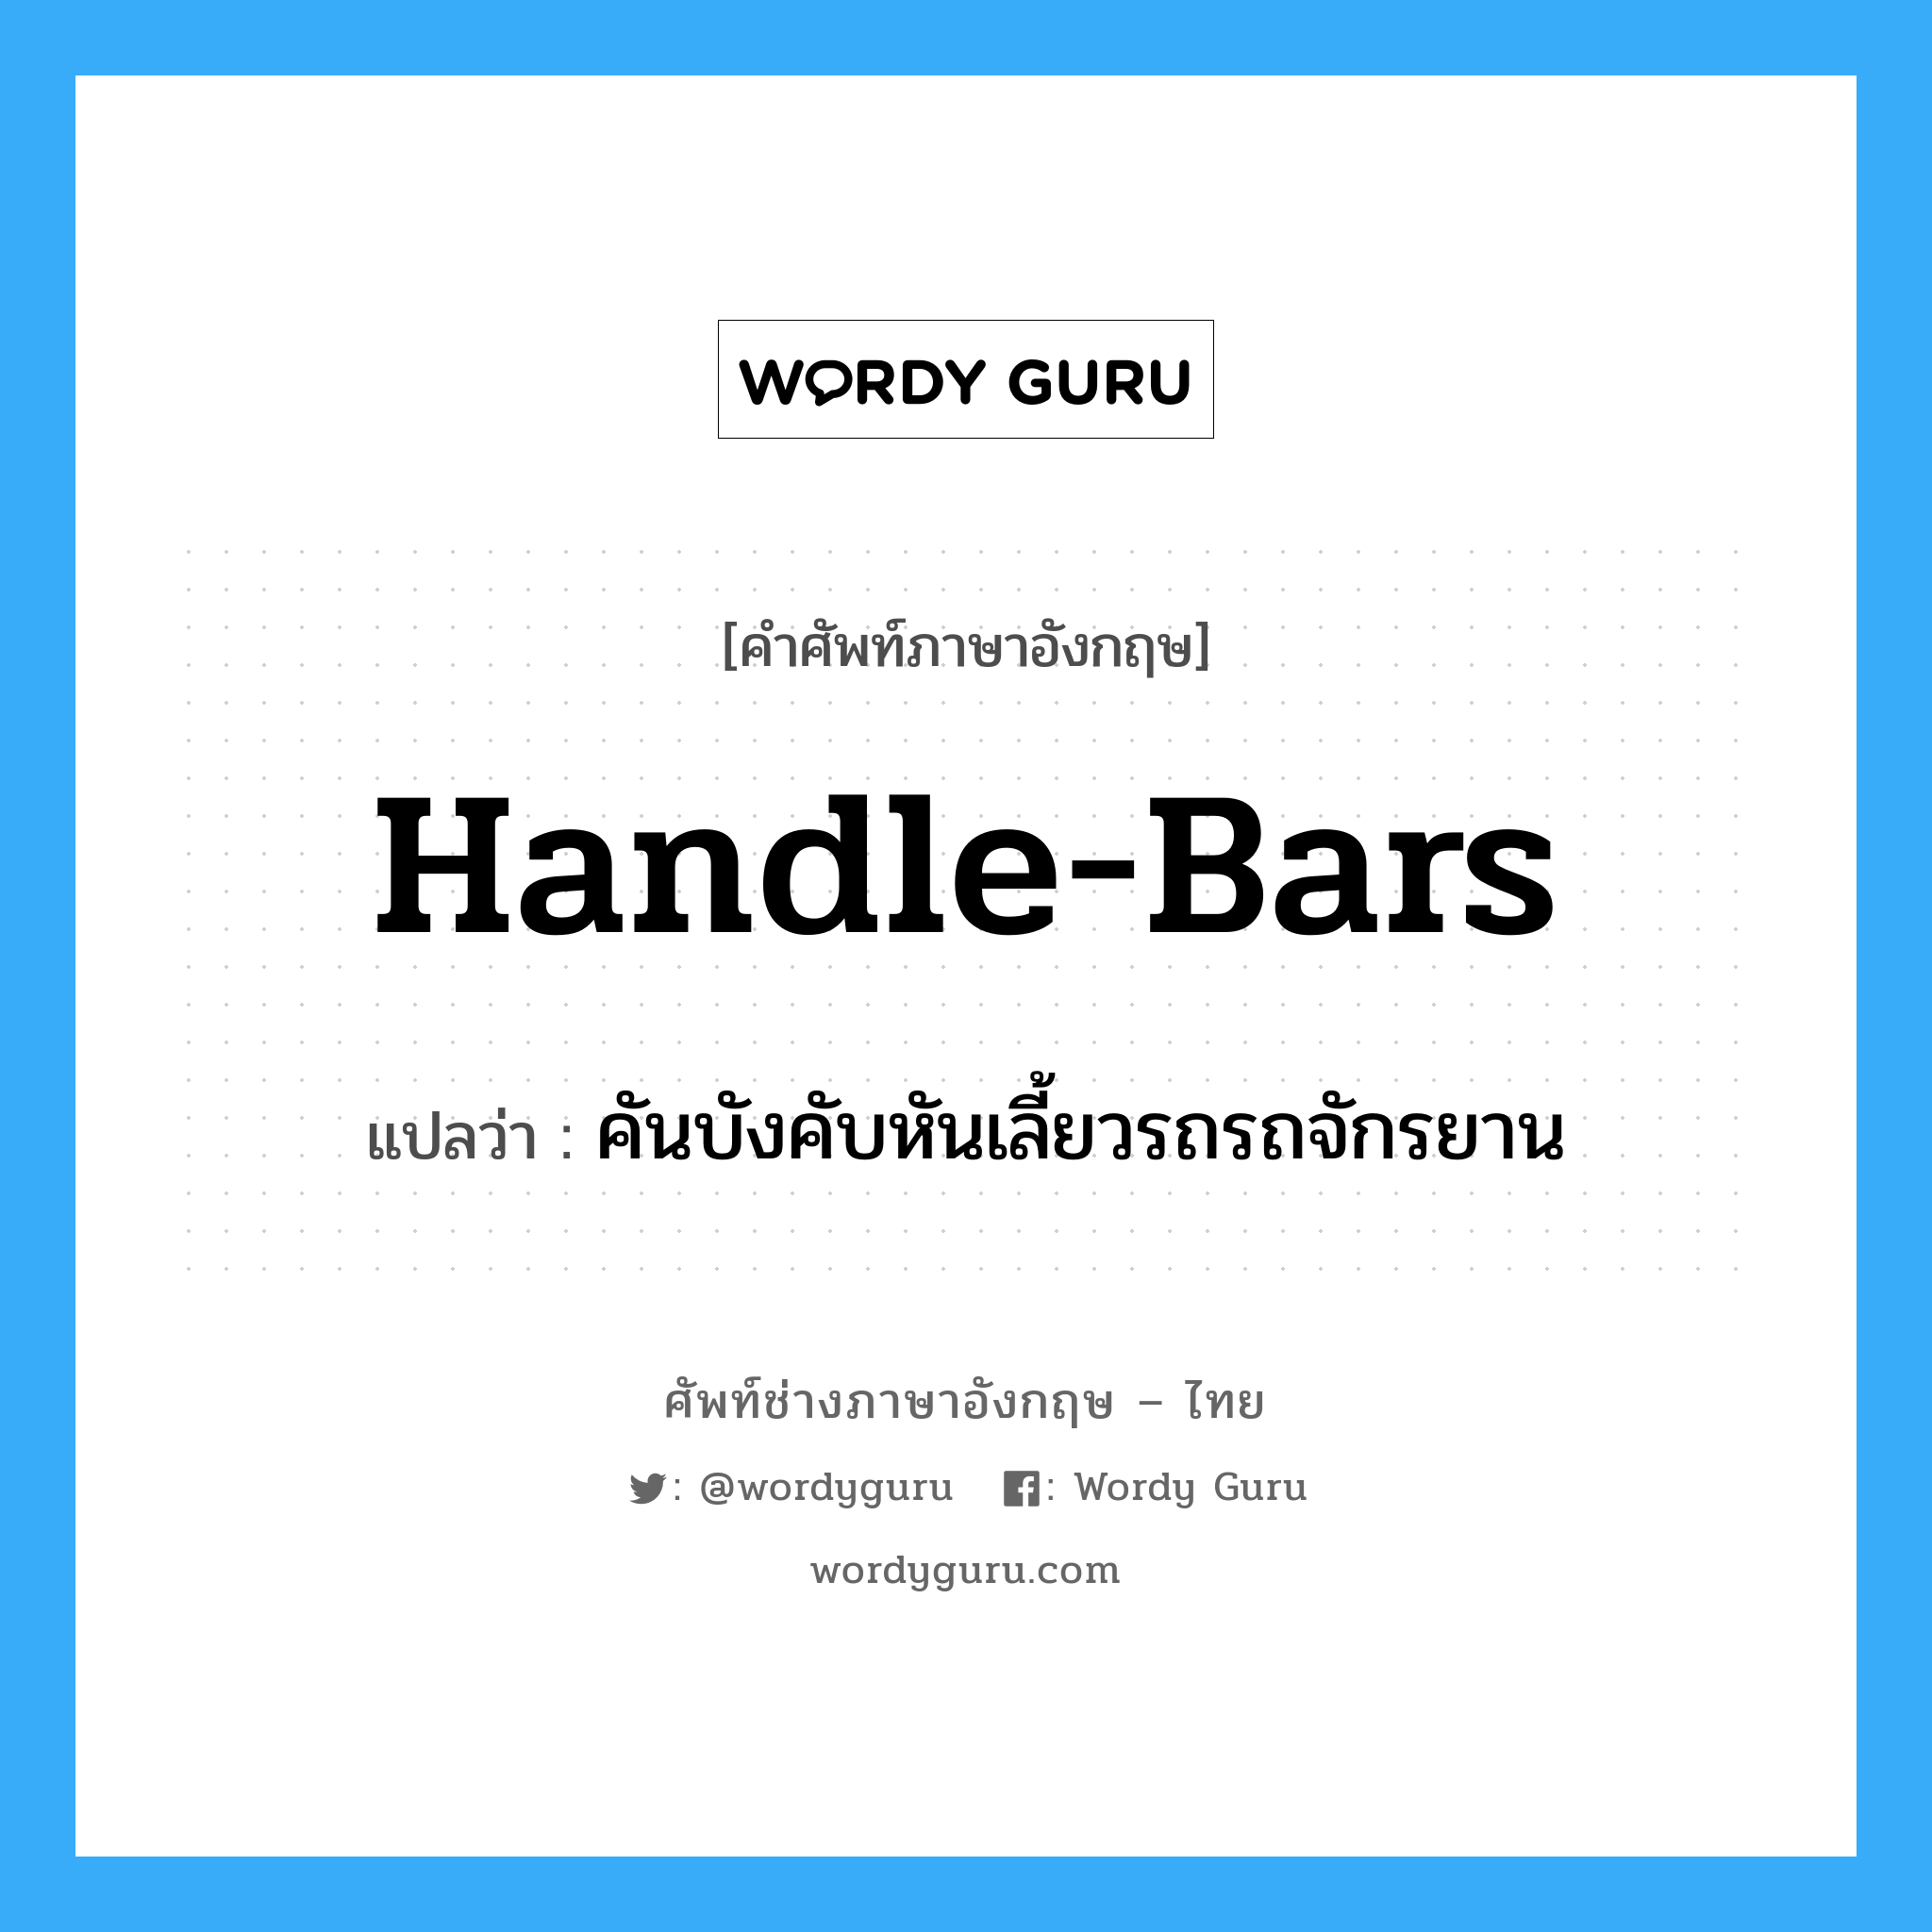 handle-bars แปลว่า?, คำศัพท์ช่างภาษาอังกฤษ - ไทย handle-bars คำศัพท์ภาษาอังกฤษ handle-bars แปลว่า คันบังคับหันเลี้ยวรถรถจักรยาน